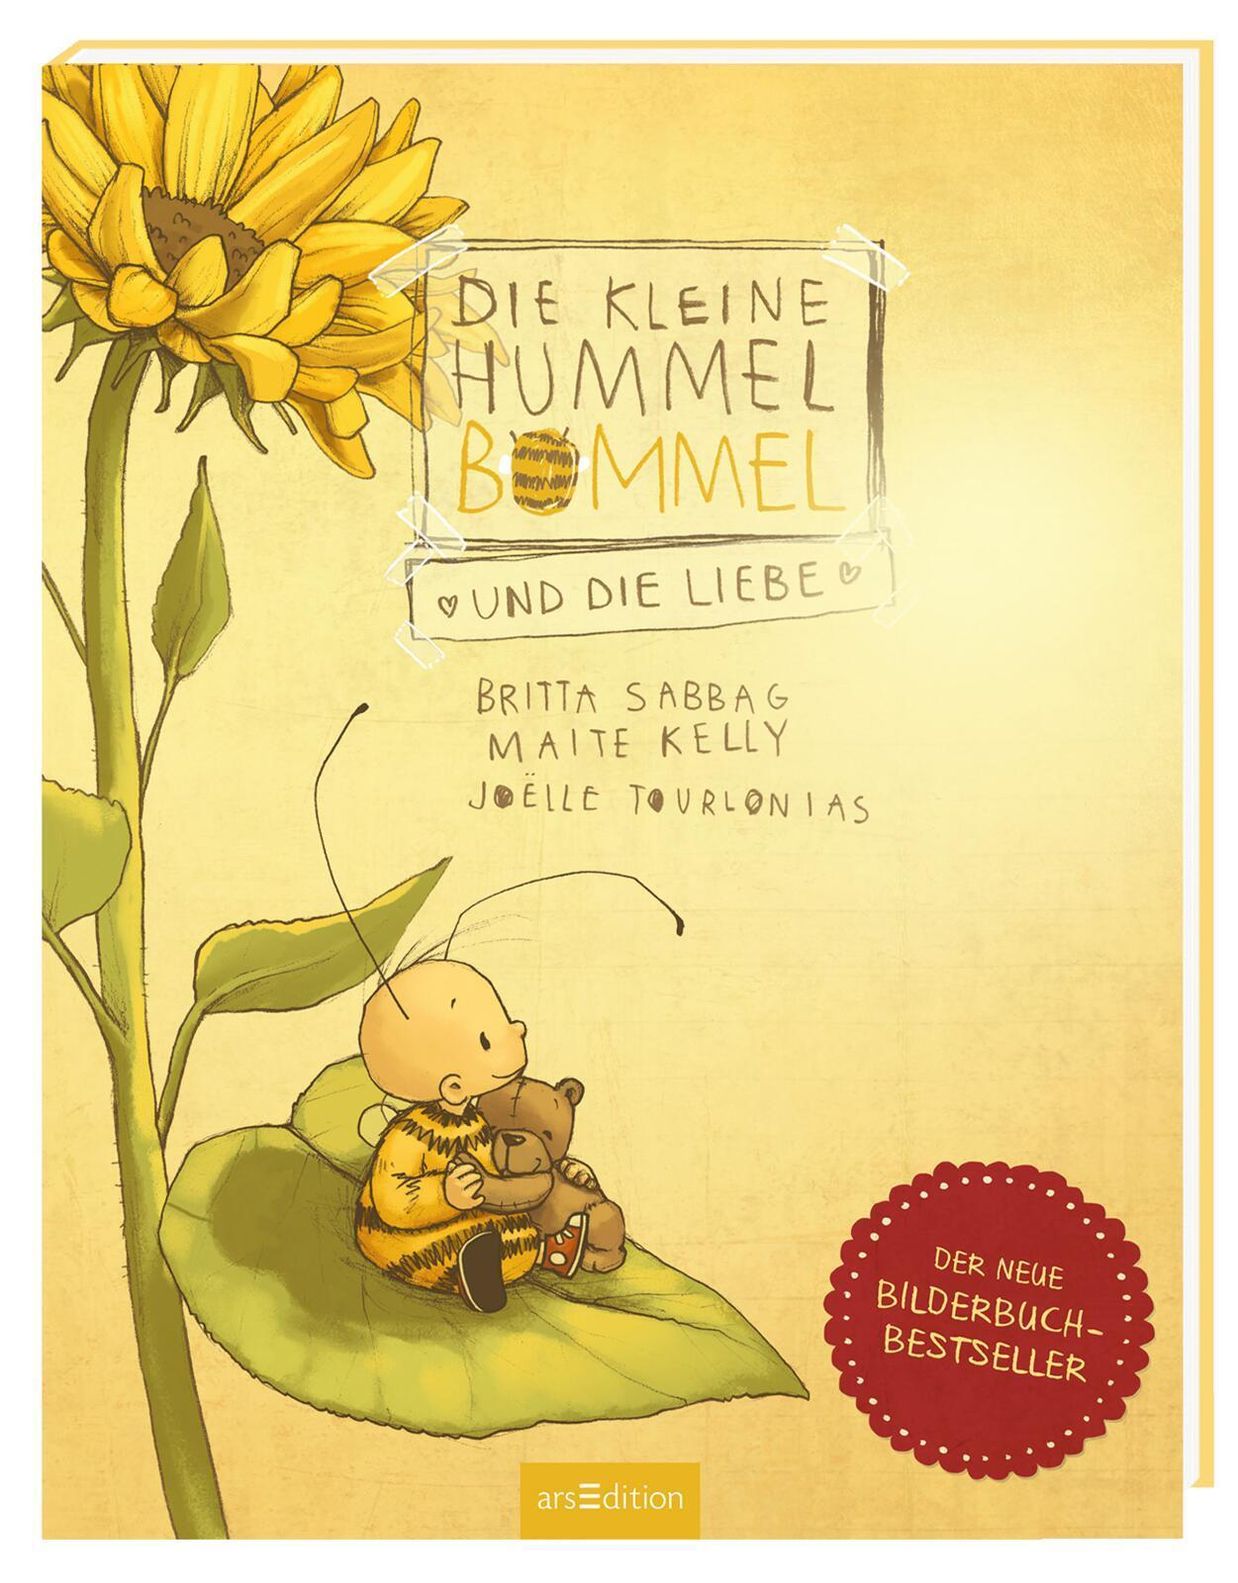 Die kleine Hummel Bommel und die Liebe | tausendkind.de